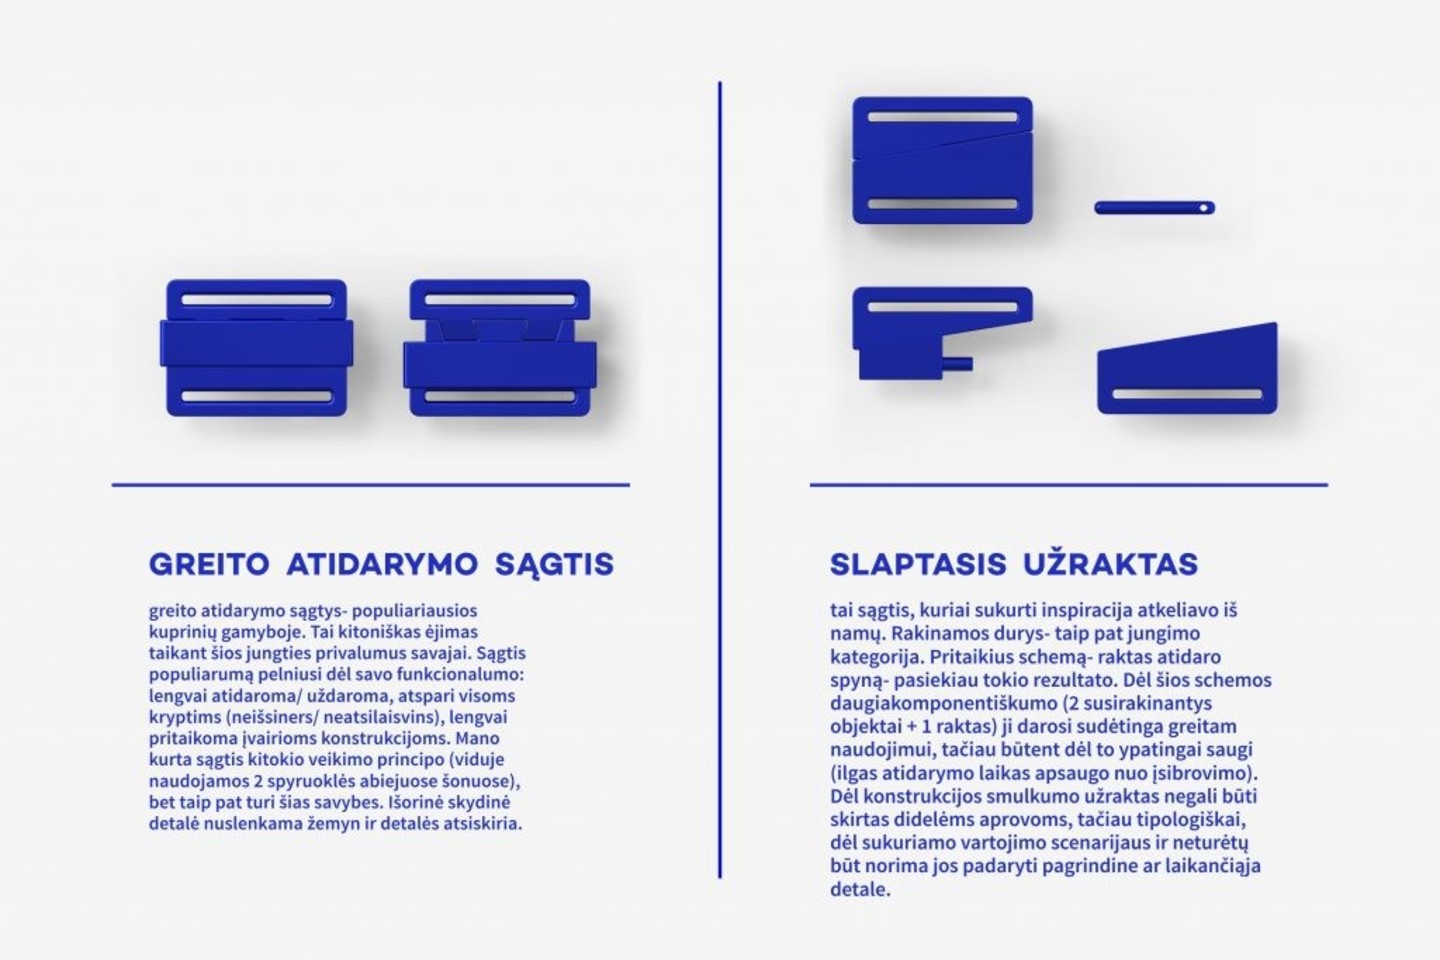  Komisija aukščiausiai įvertino itin praktišką dizaino projektą – Vilniaus Dailės akademijos produkto dizaino katedros bakalaurės Kamilės Korsakaitės sagčių, pritaikytų automobilių diržams, rinkinį UNIT'E.<br> Asmeninio archyvo nuotr.